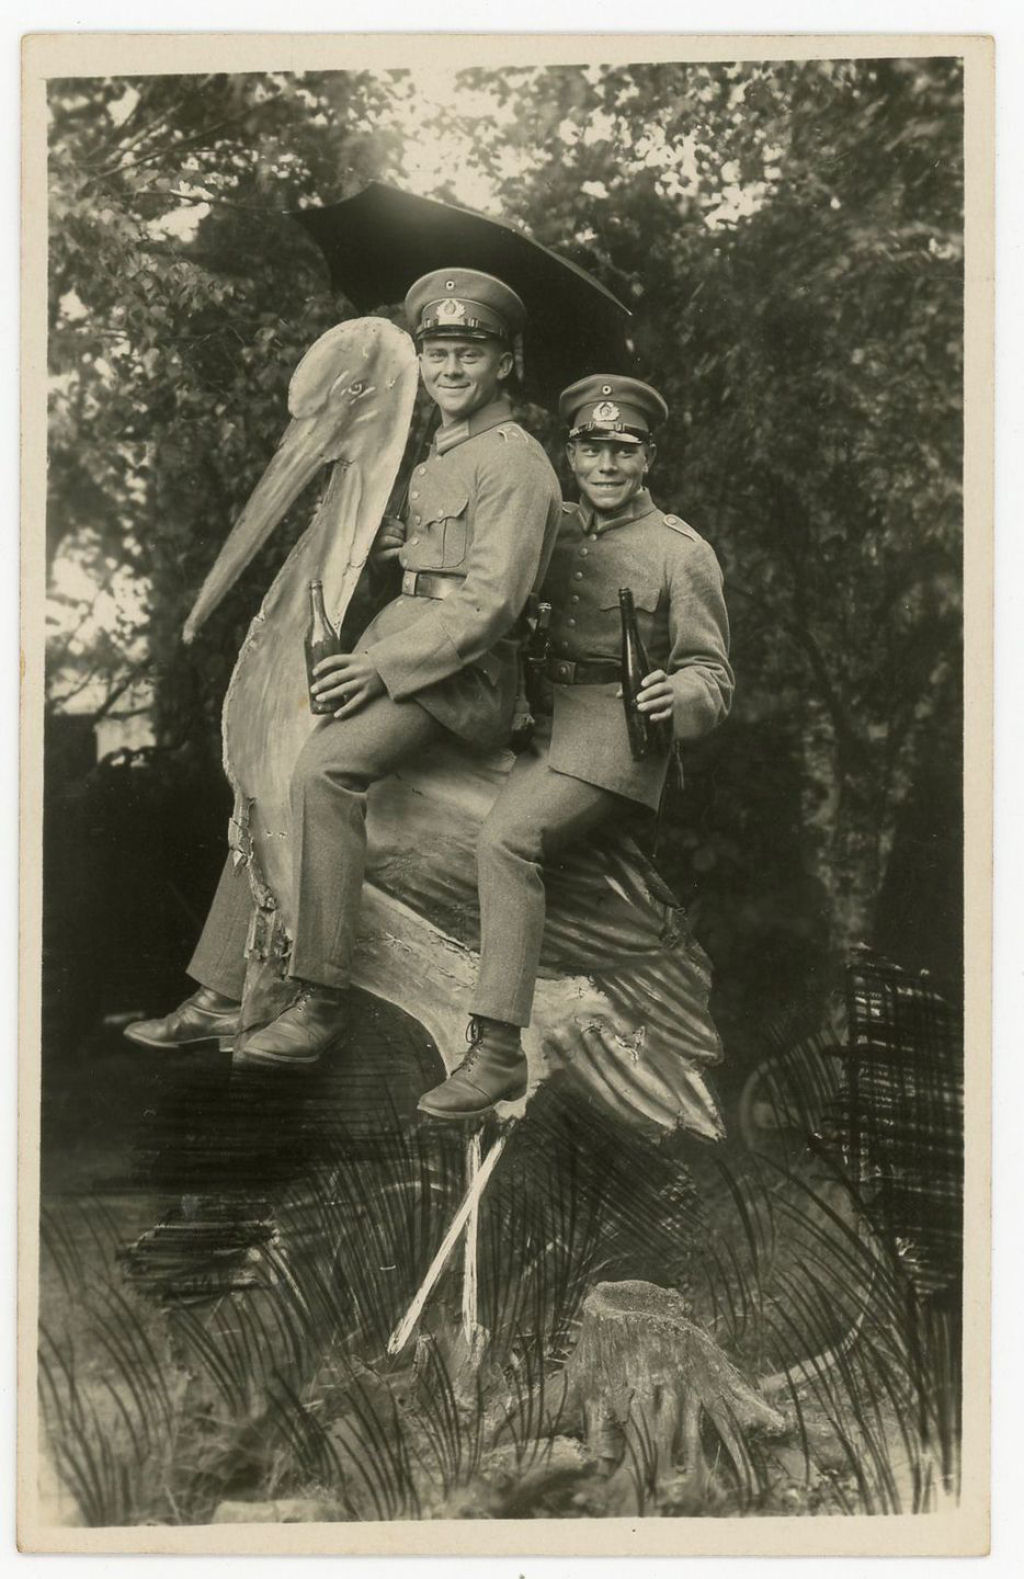 Fotos engraadas mostram soldados da Primeira Guerra Mundial posando com falsos adereos militares 27